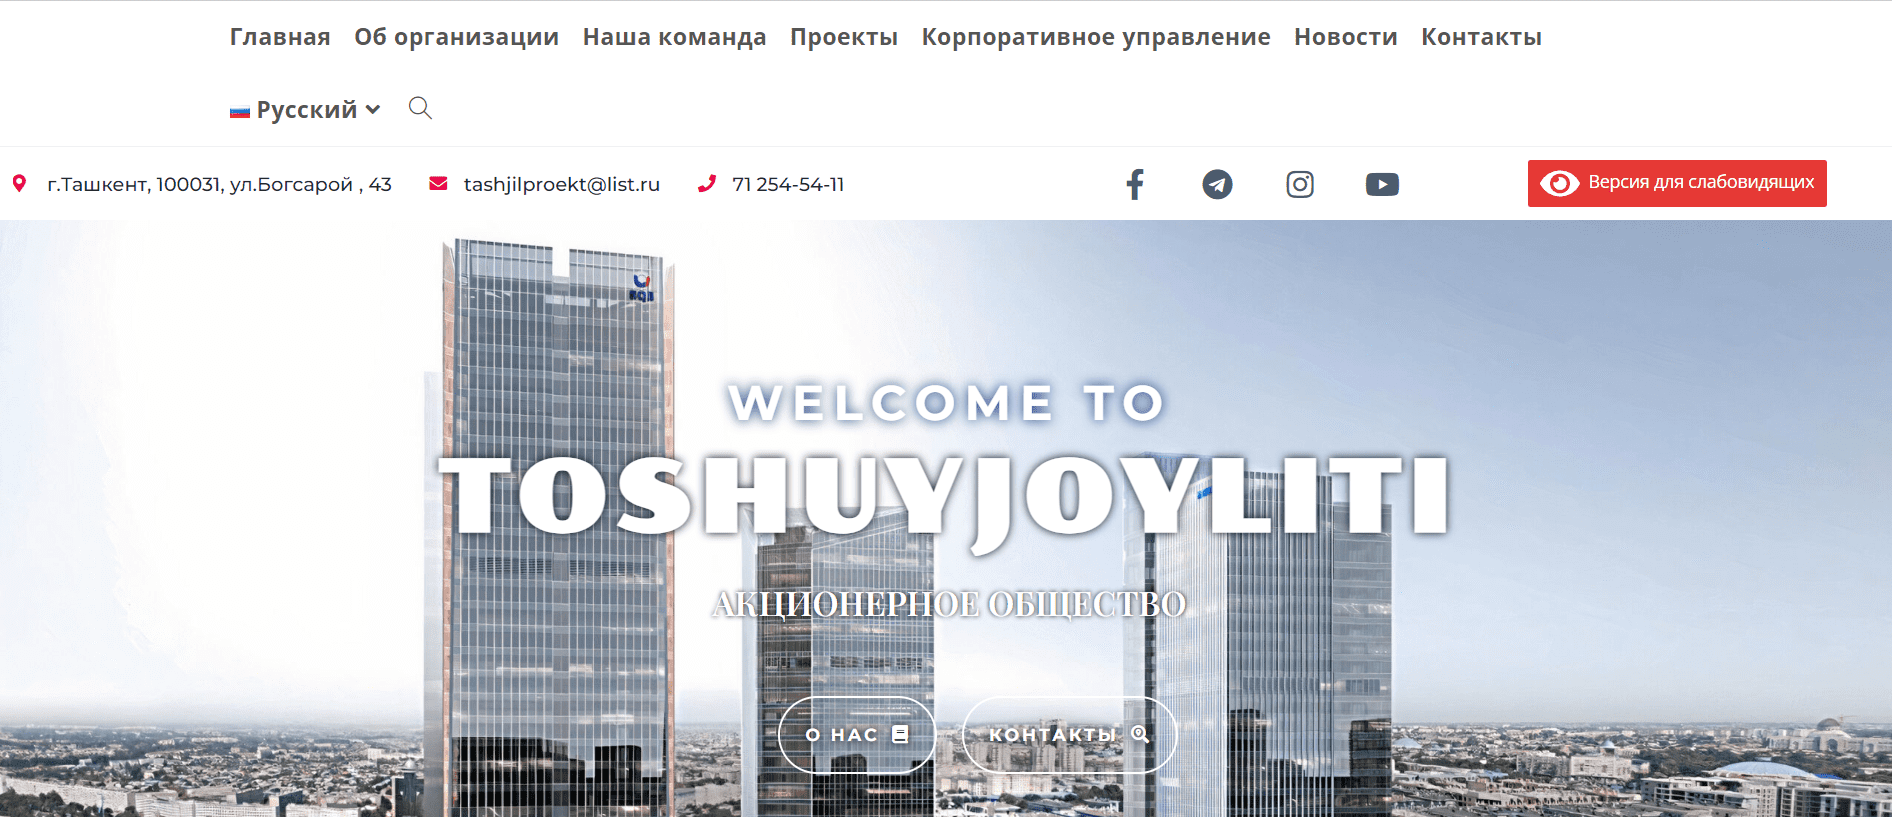 ТошуйжойЛИТИ (toshuyjoyliti.uz) - официальный сайт